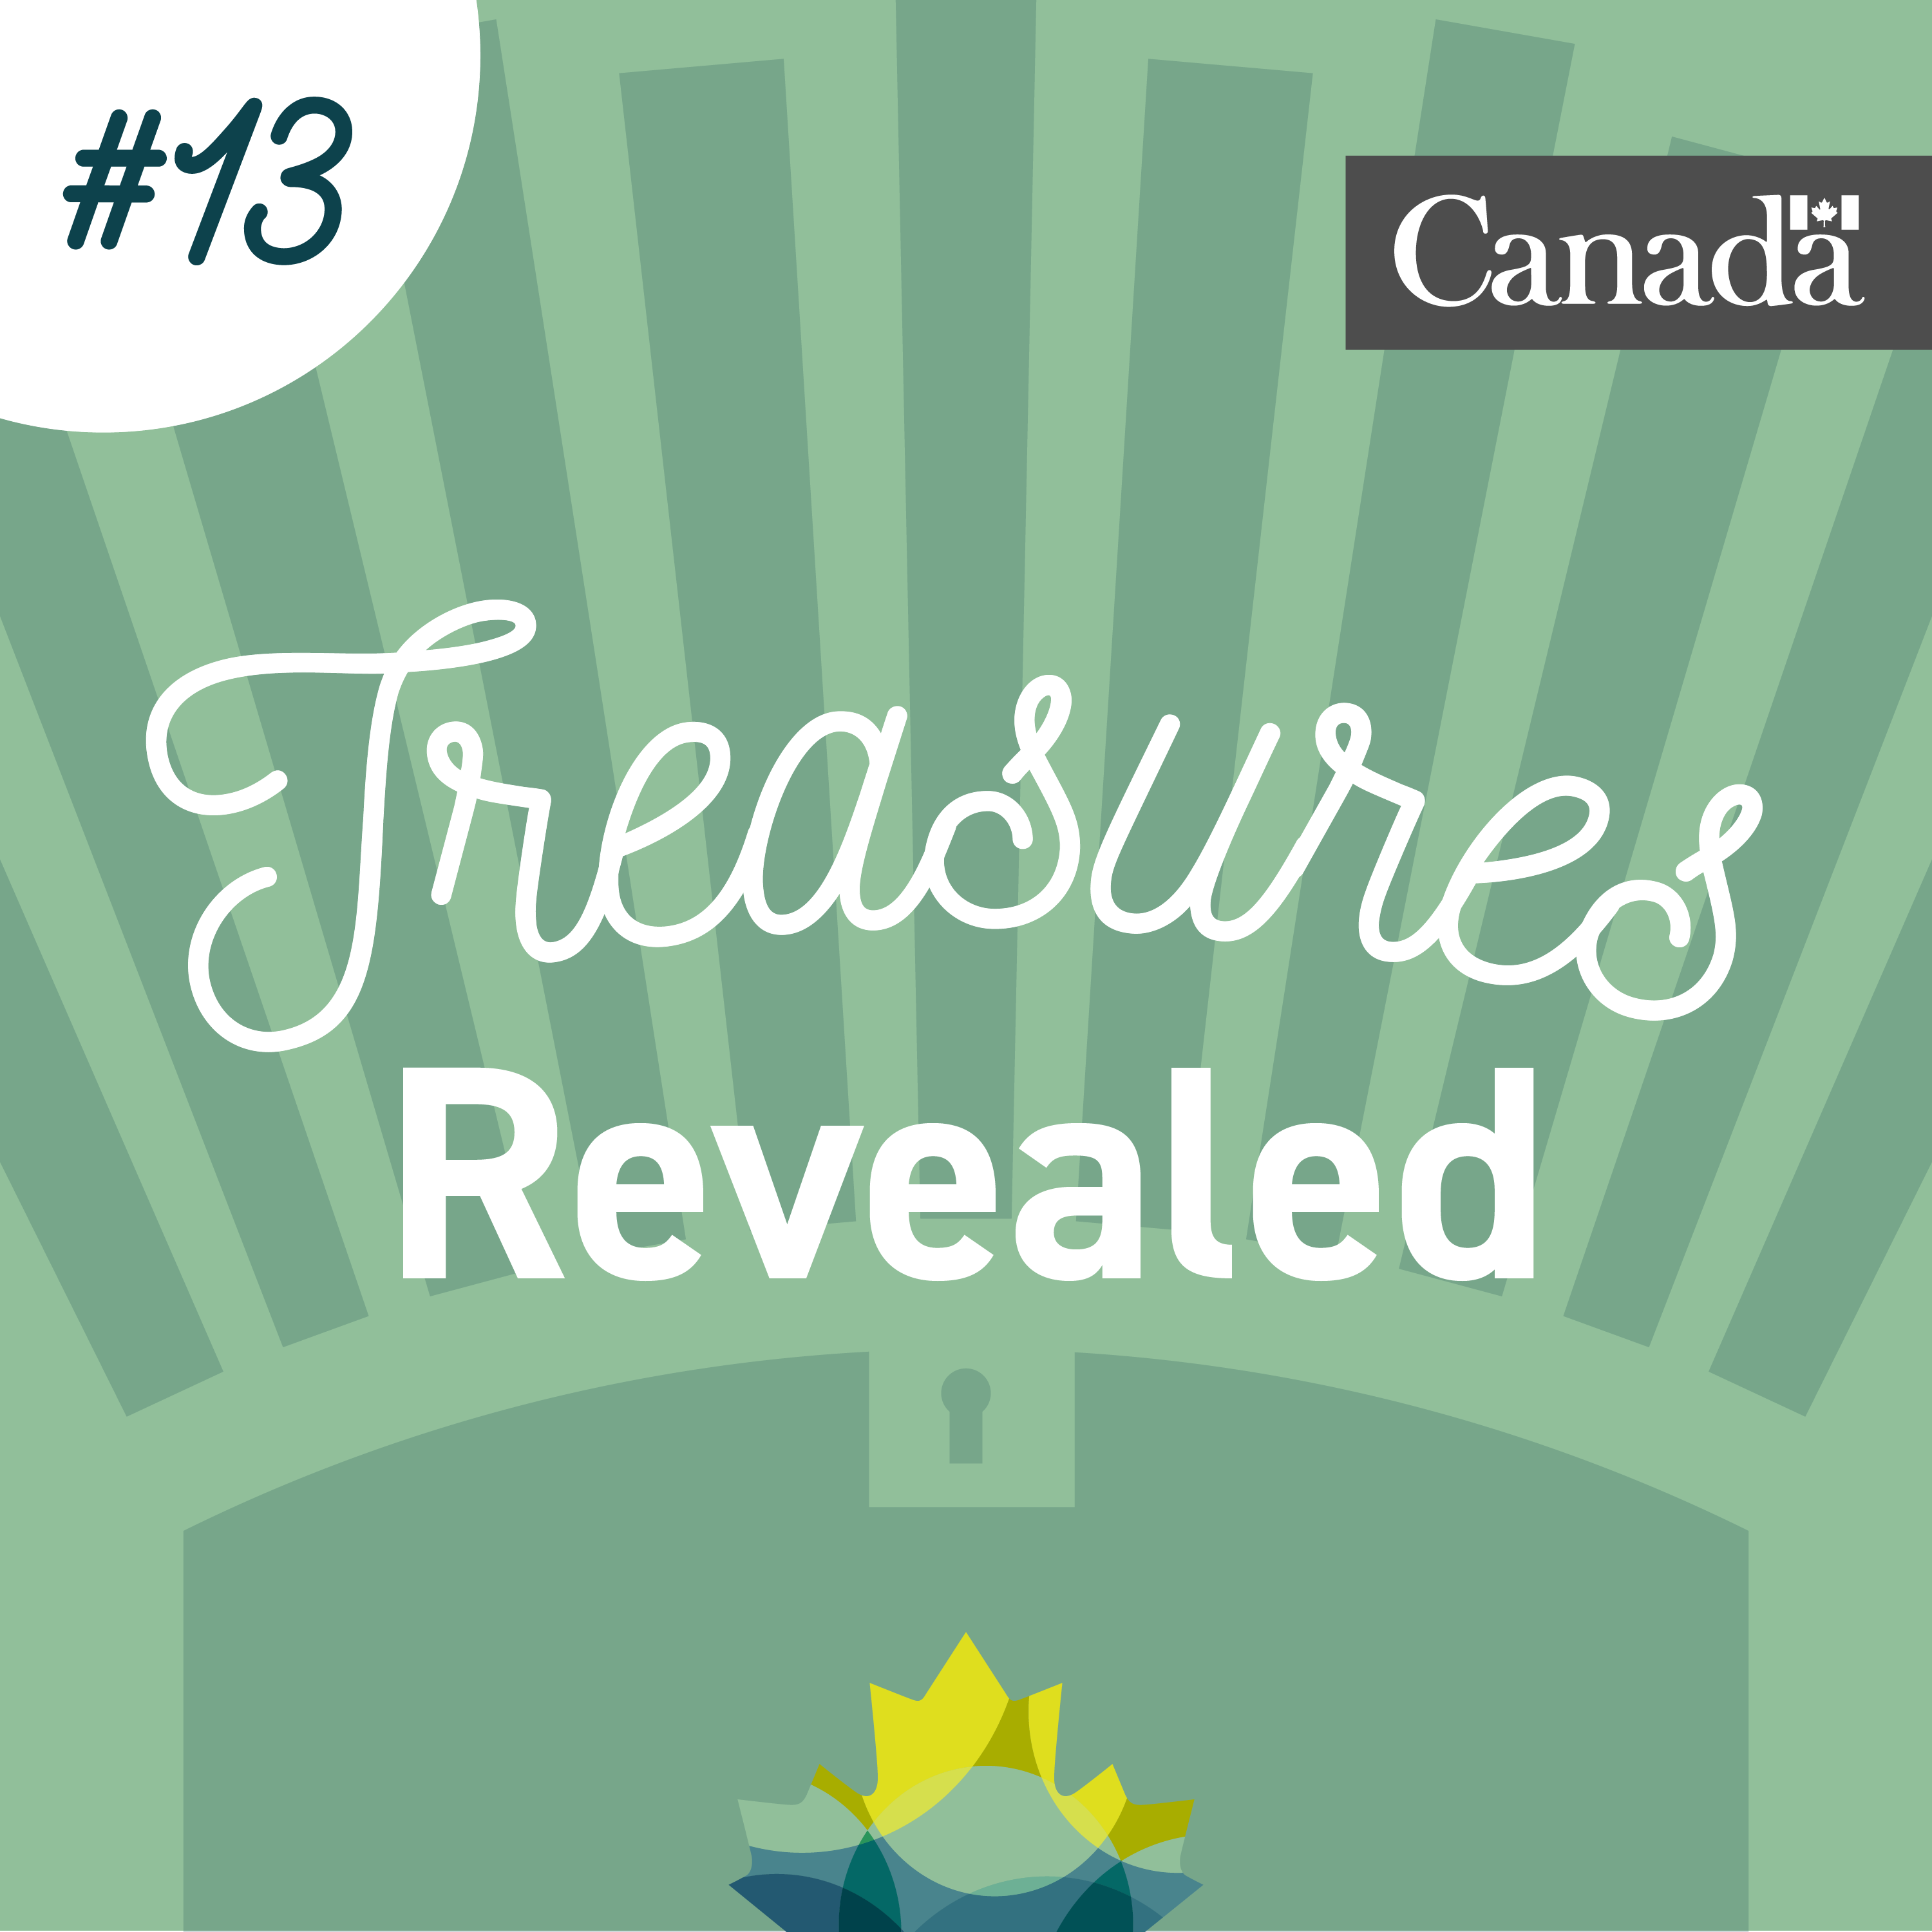 Coffre au trésor stylisé de couleur verte dans lequel se trouve la feuille d’érable de Bibliothèque et Archives Canada. Des rayons sortent du coffre. L’image porte le numéro 13.